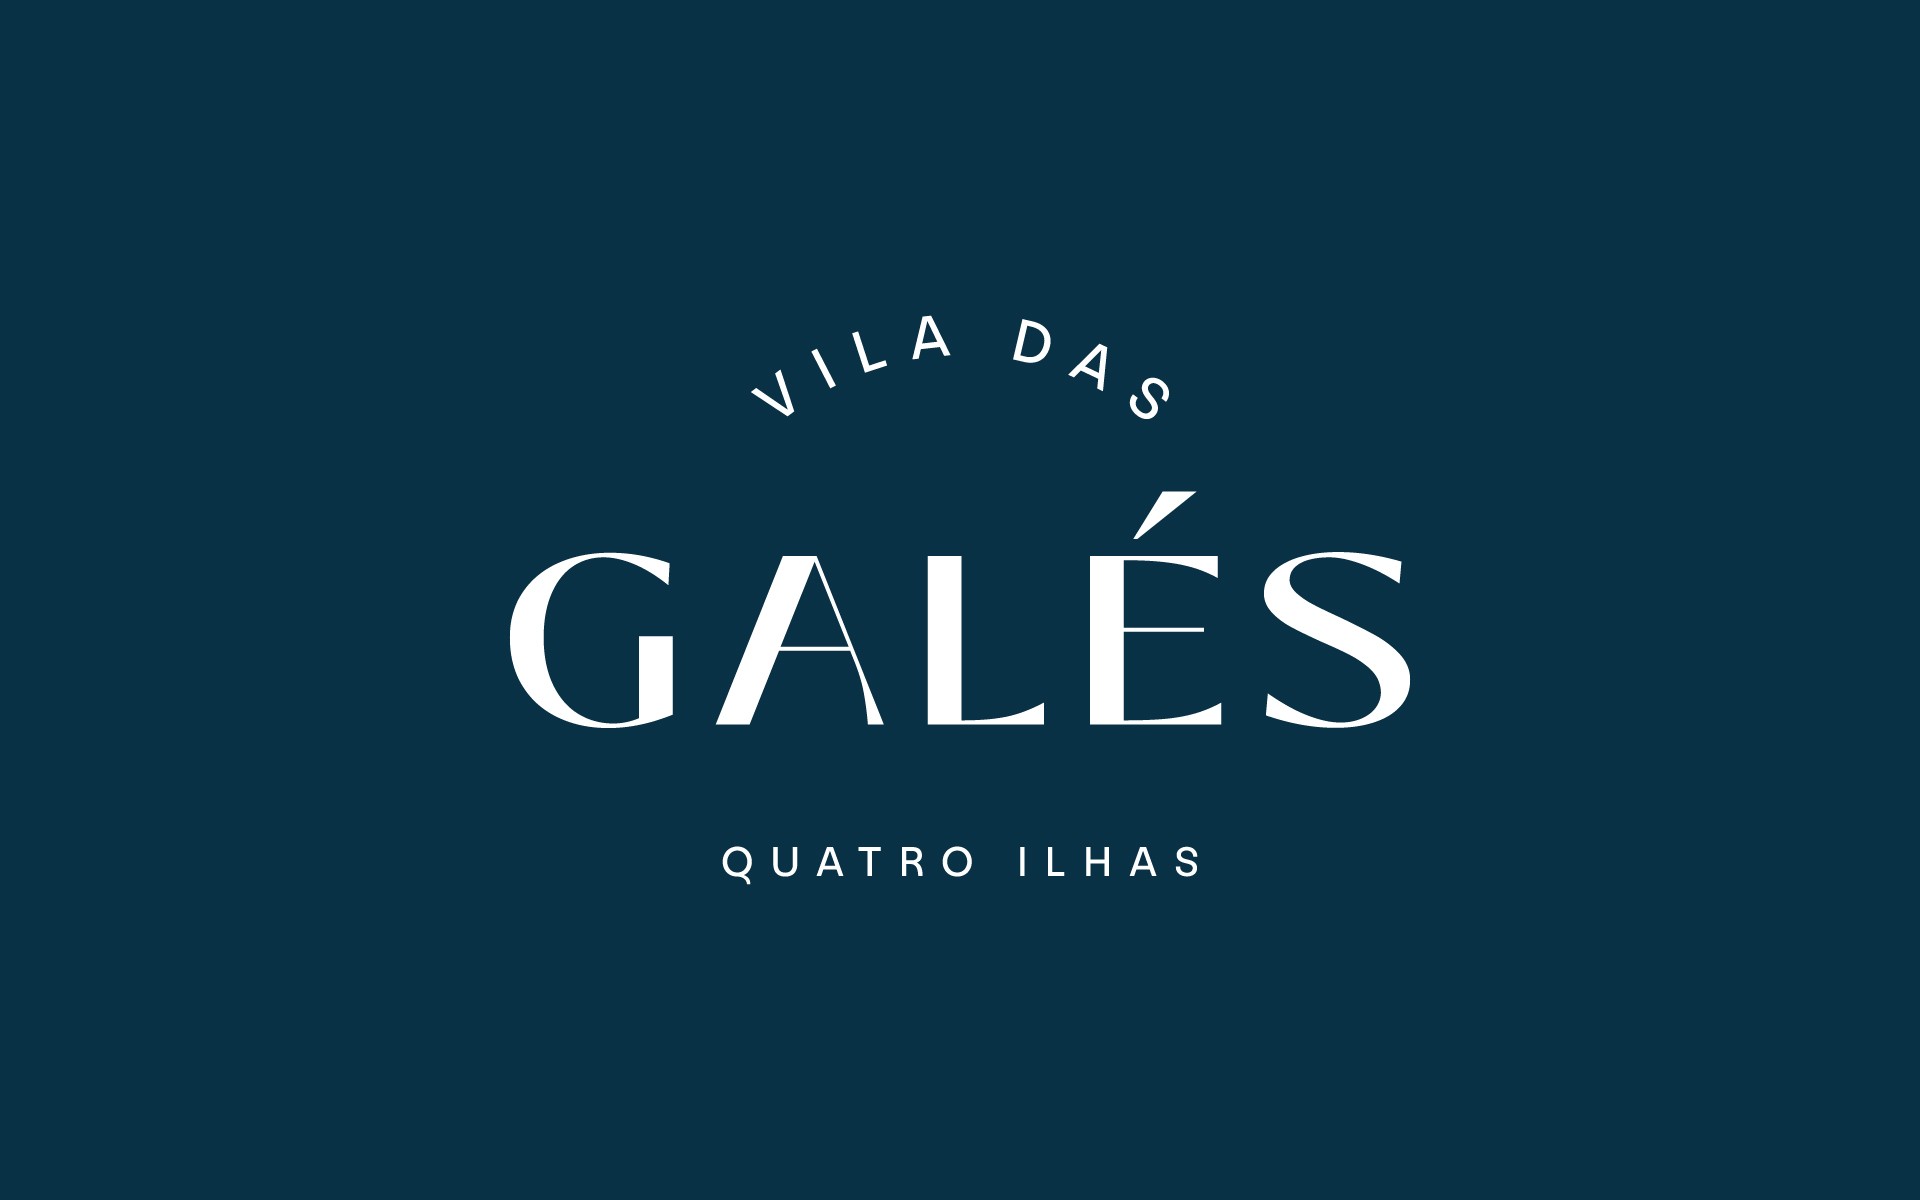 Vila das Galés